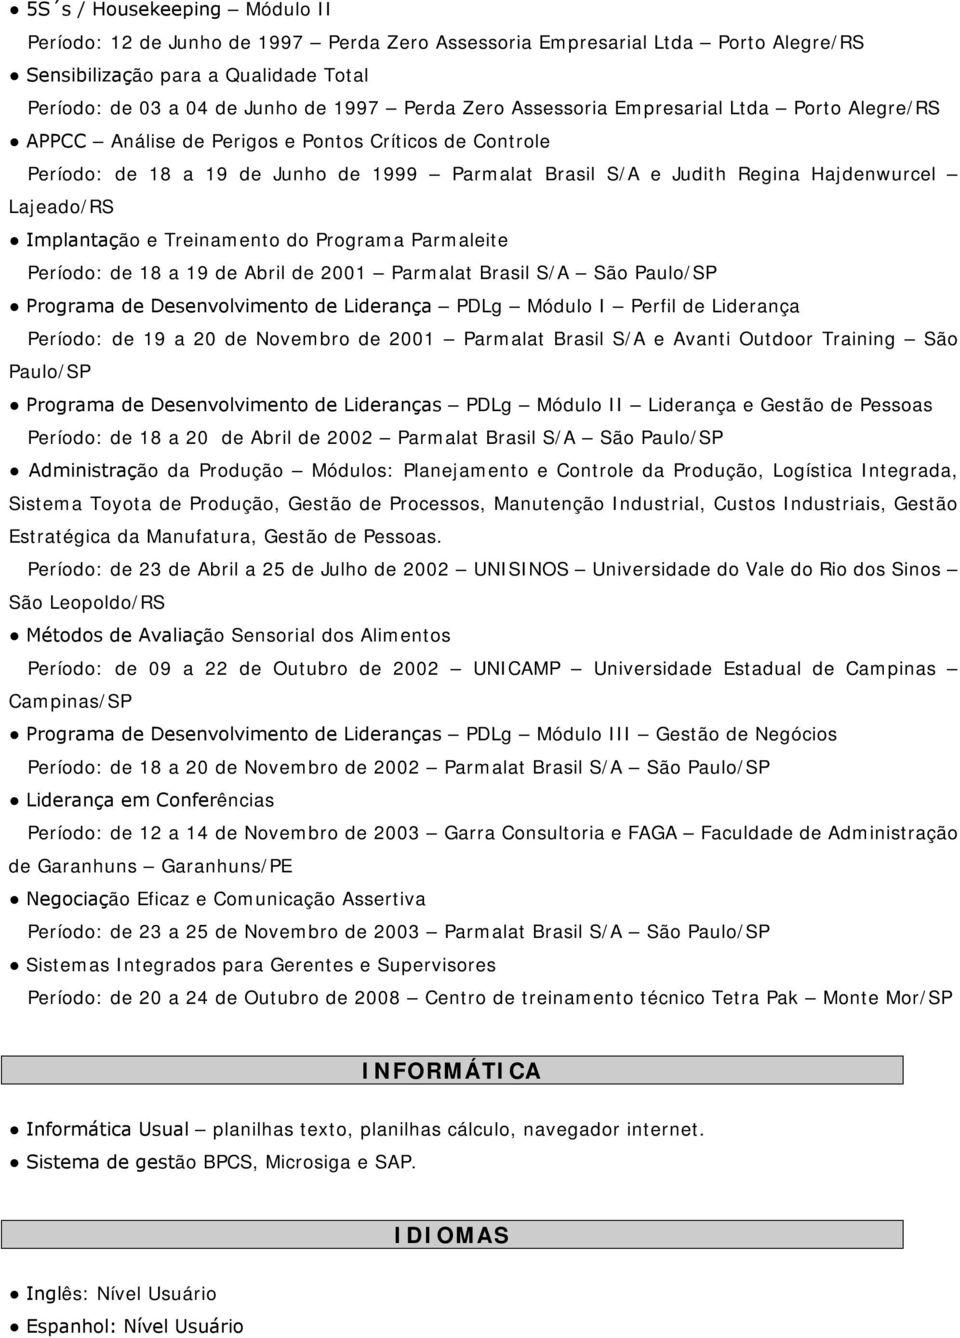 Implantação e Treinamento do Programa Parmaleite Período: de 18 a 19 de Abril de 2001 Parmalat Brasil S/A São Paulo/SP Programa de Desenvolvimento de Liderança PDLg Módulo I Perfil de Liderança